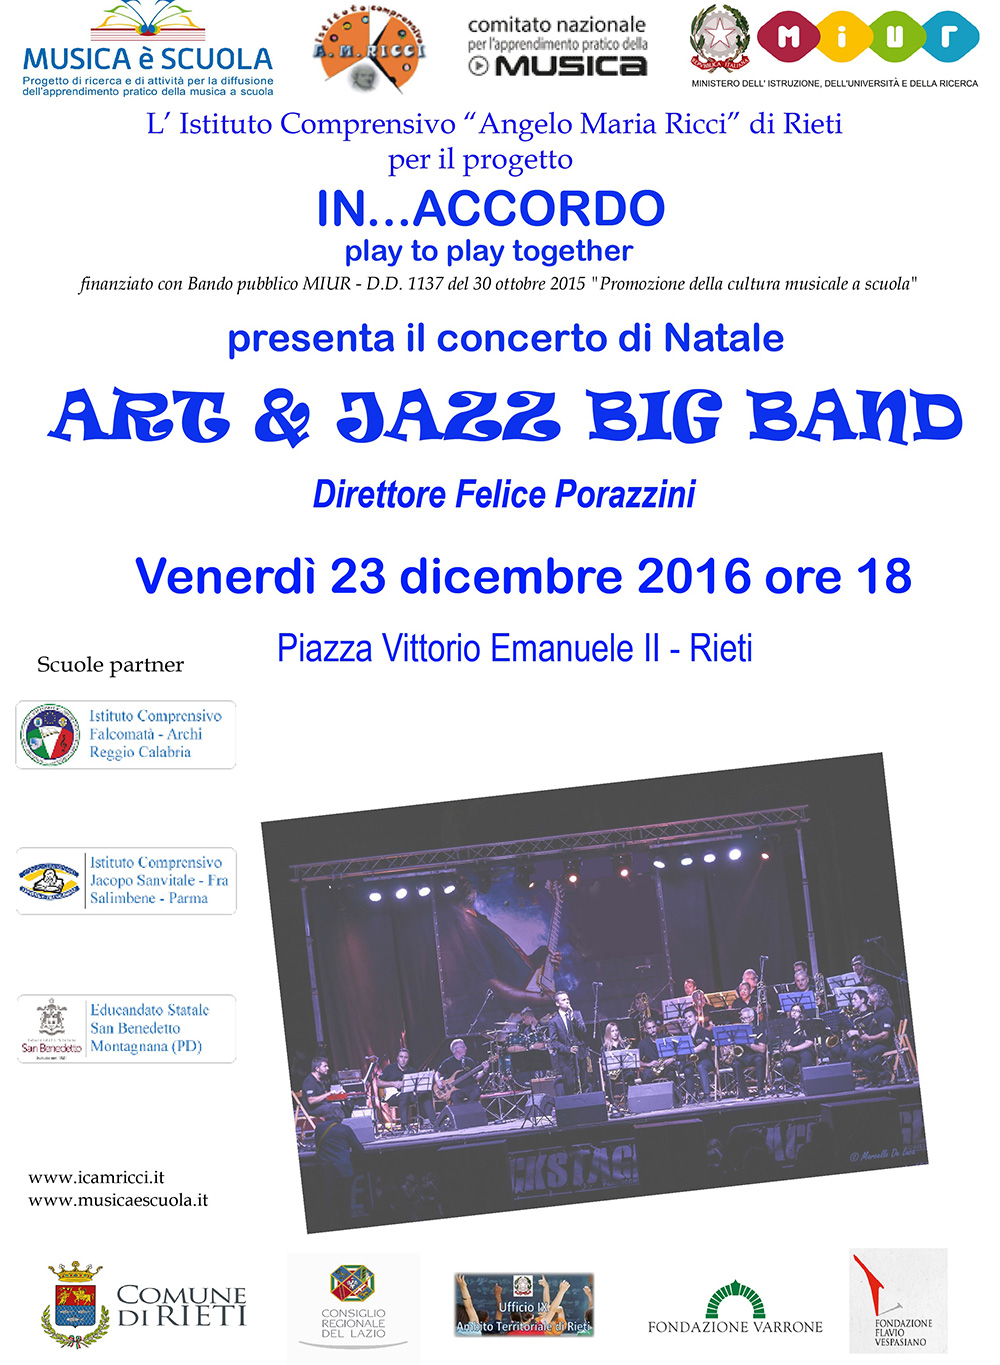 23/12/2016 Rieti - Concerto dell’“Art & Jazz Big Band” diretta da Felice Porazzini